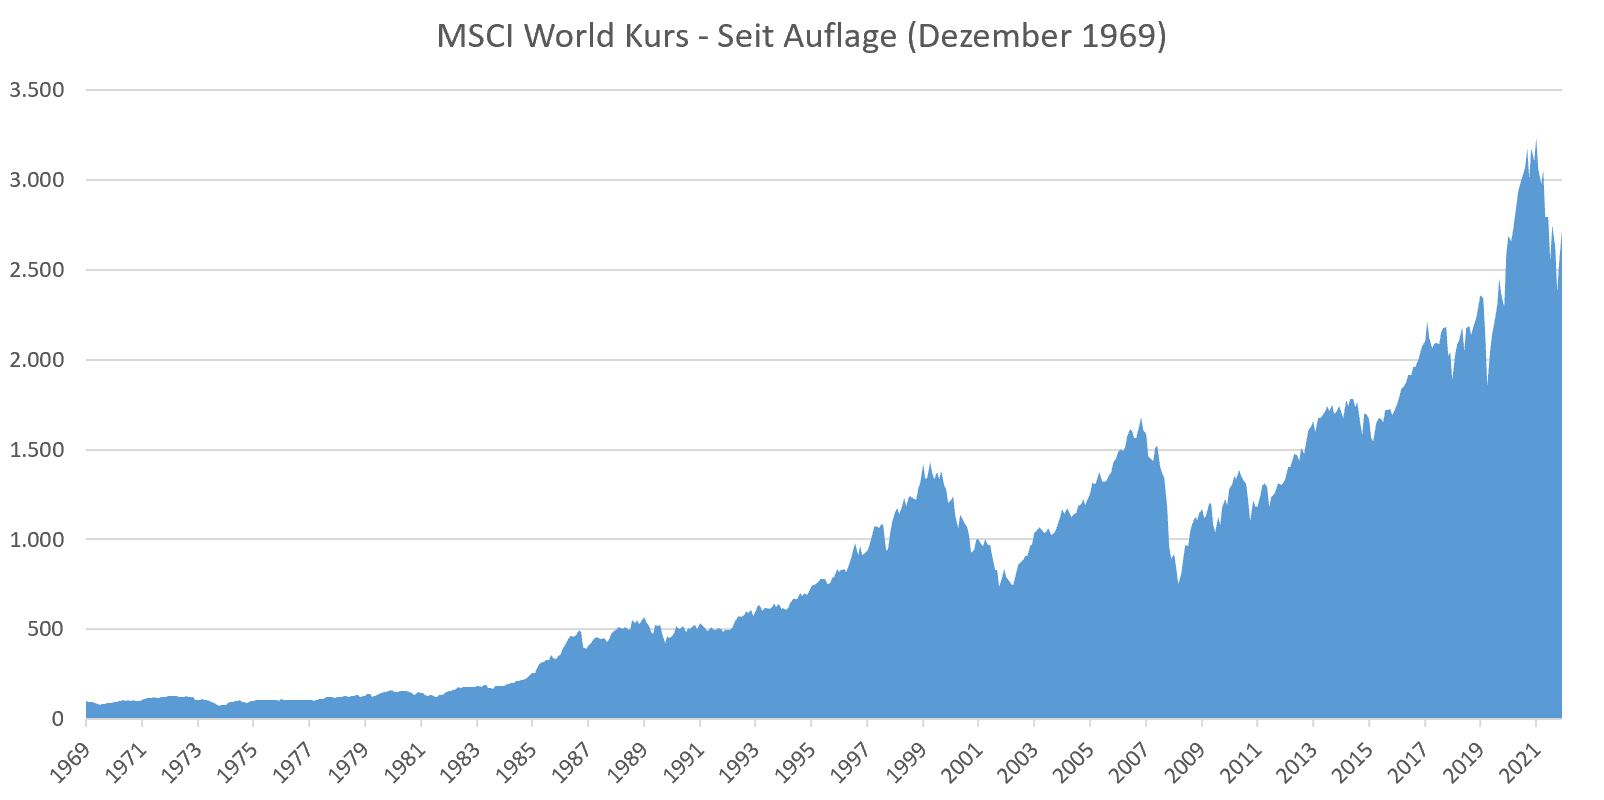 MSCI World Kurs seit Beginn (seit Auflage im Jahr 1969)